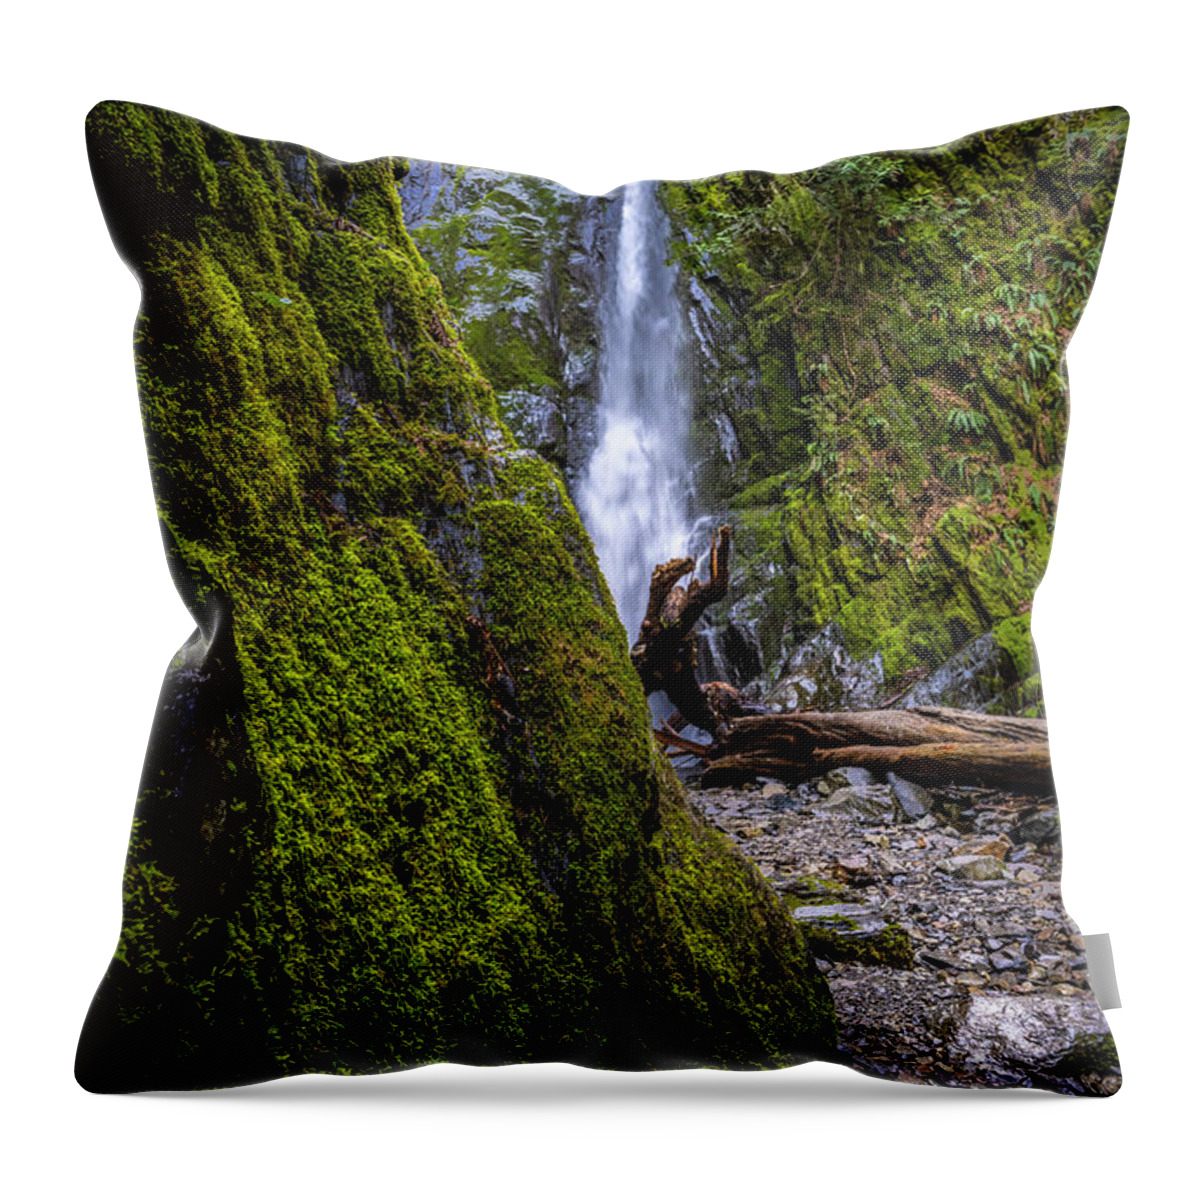 Waterfalls Throw Pillow featuring the photograph The Hidden Waterfalls by Bill Cubitt